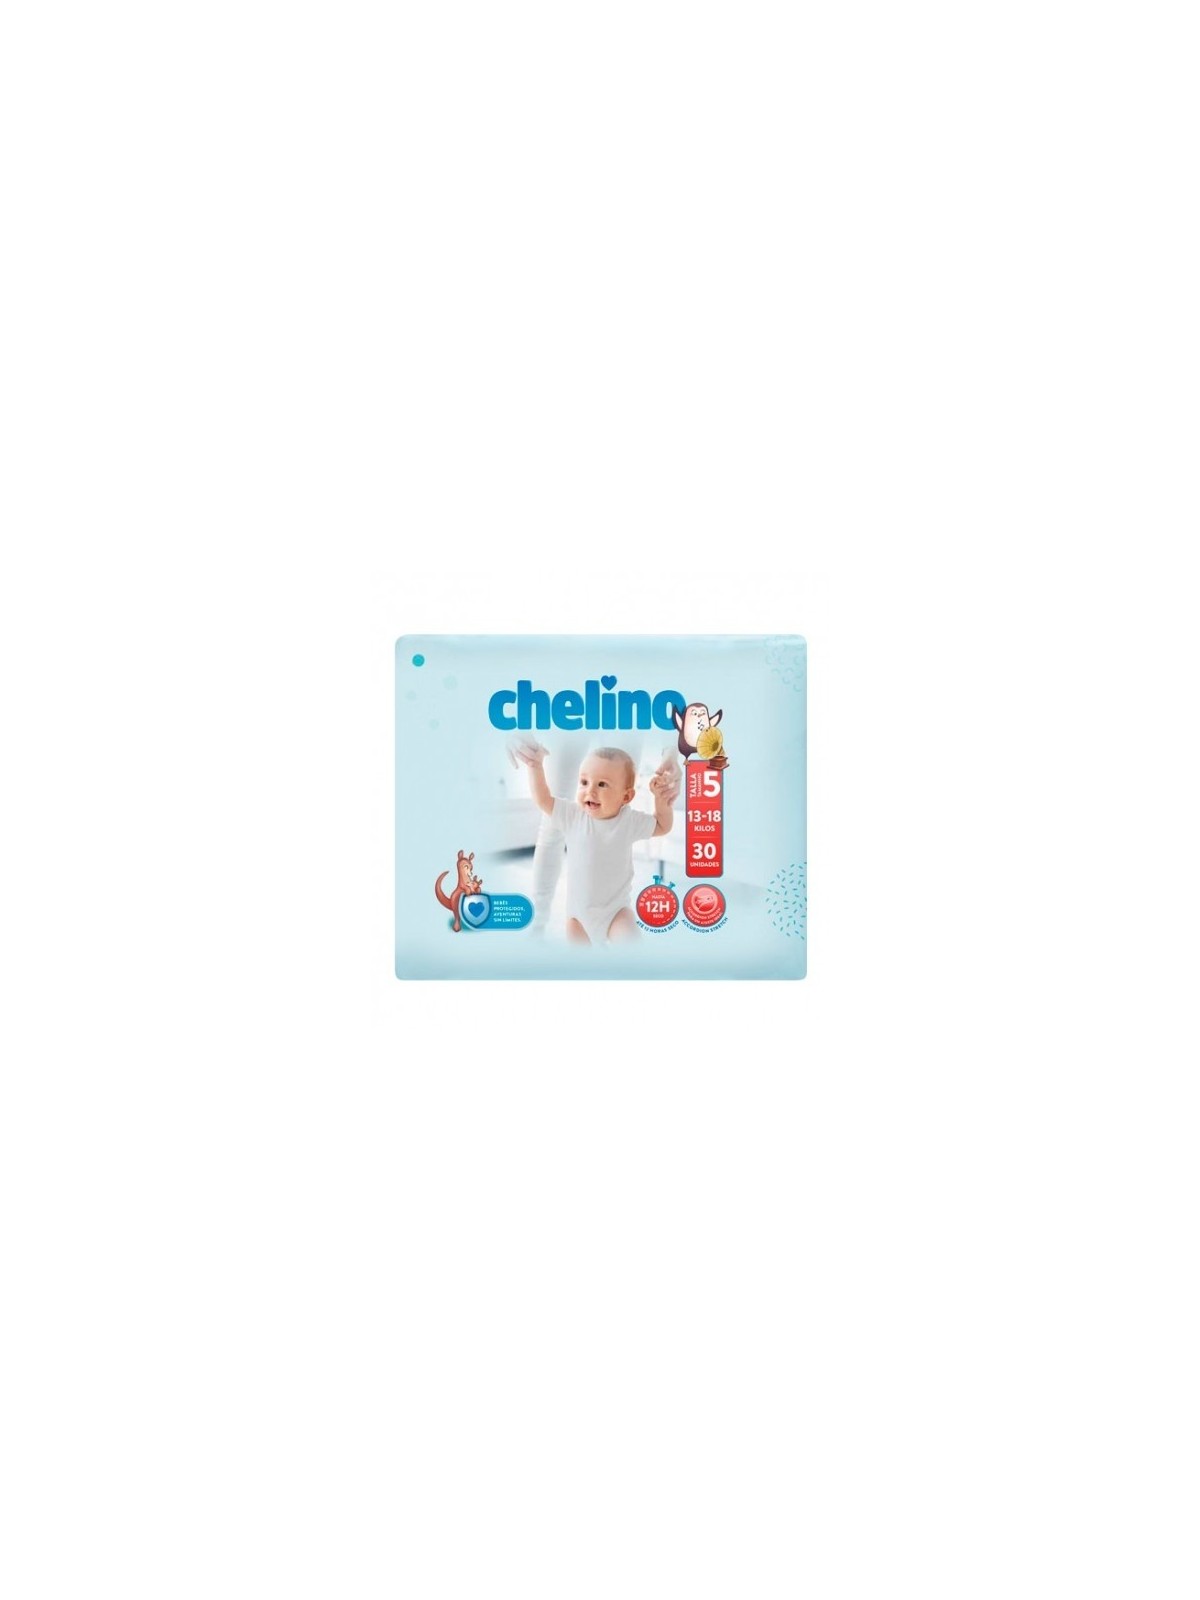 Pañales Chelino - Farmacia PTS